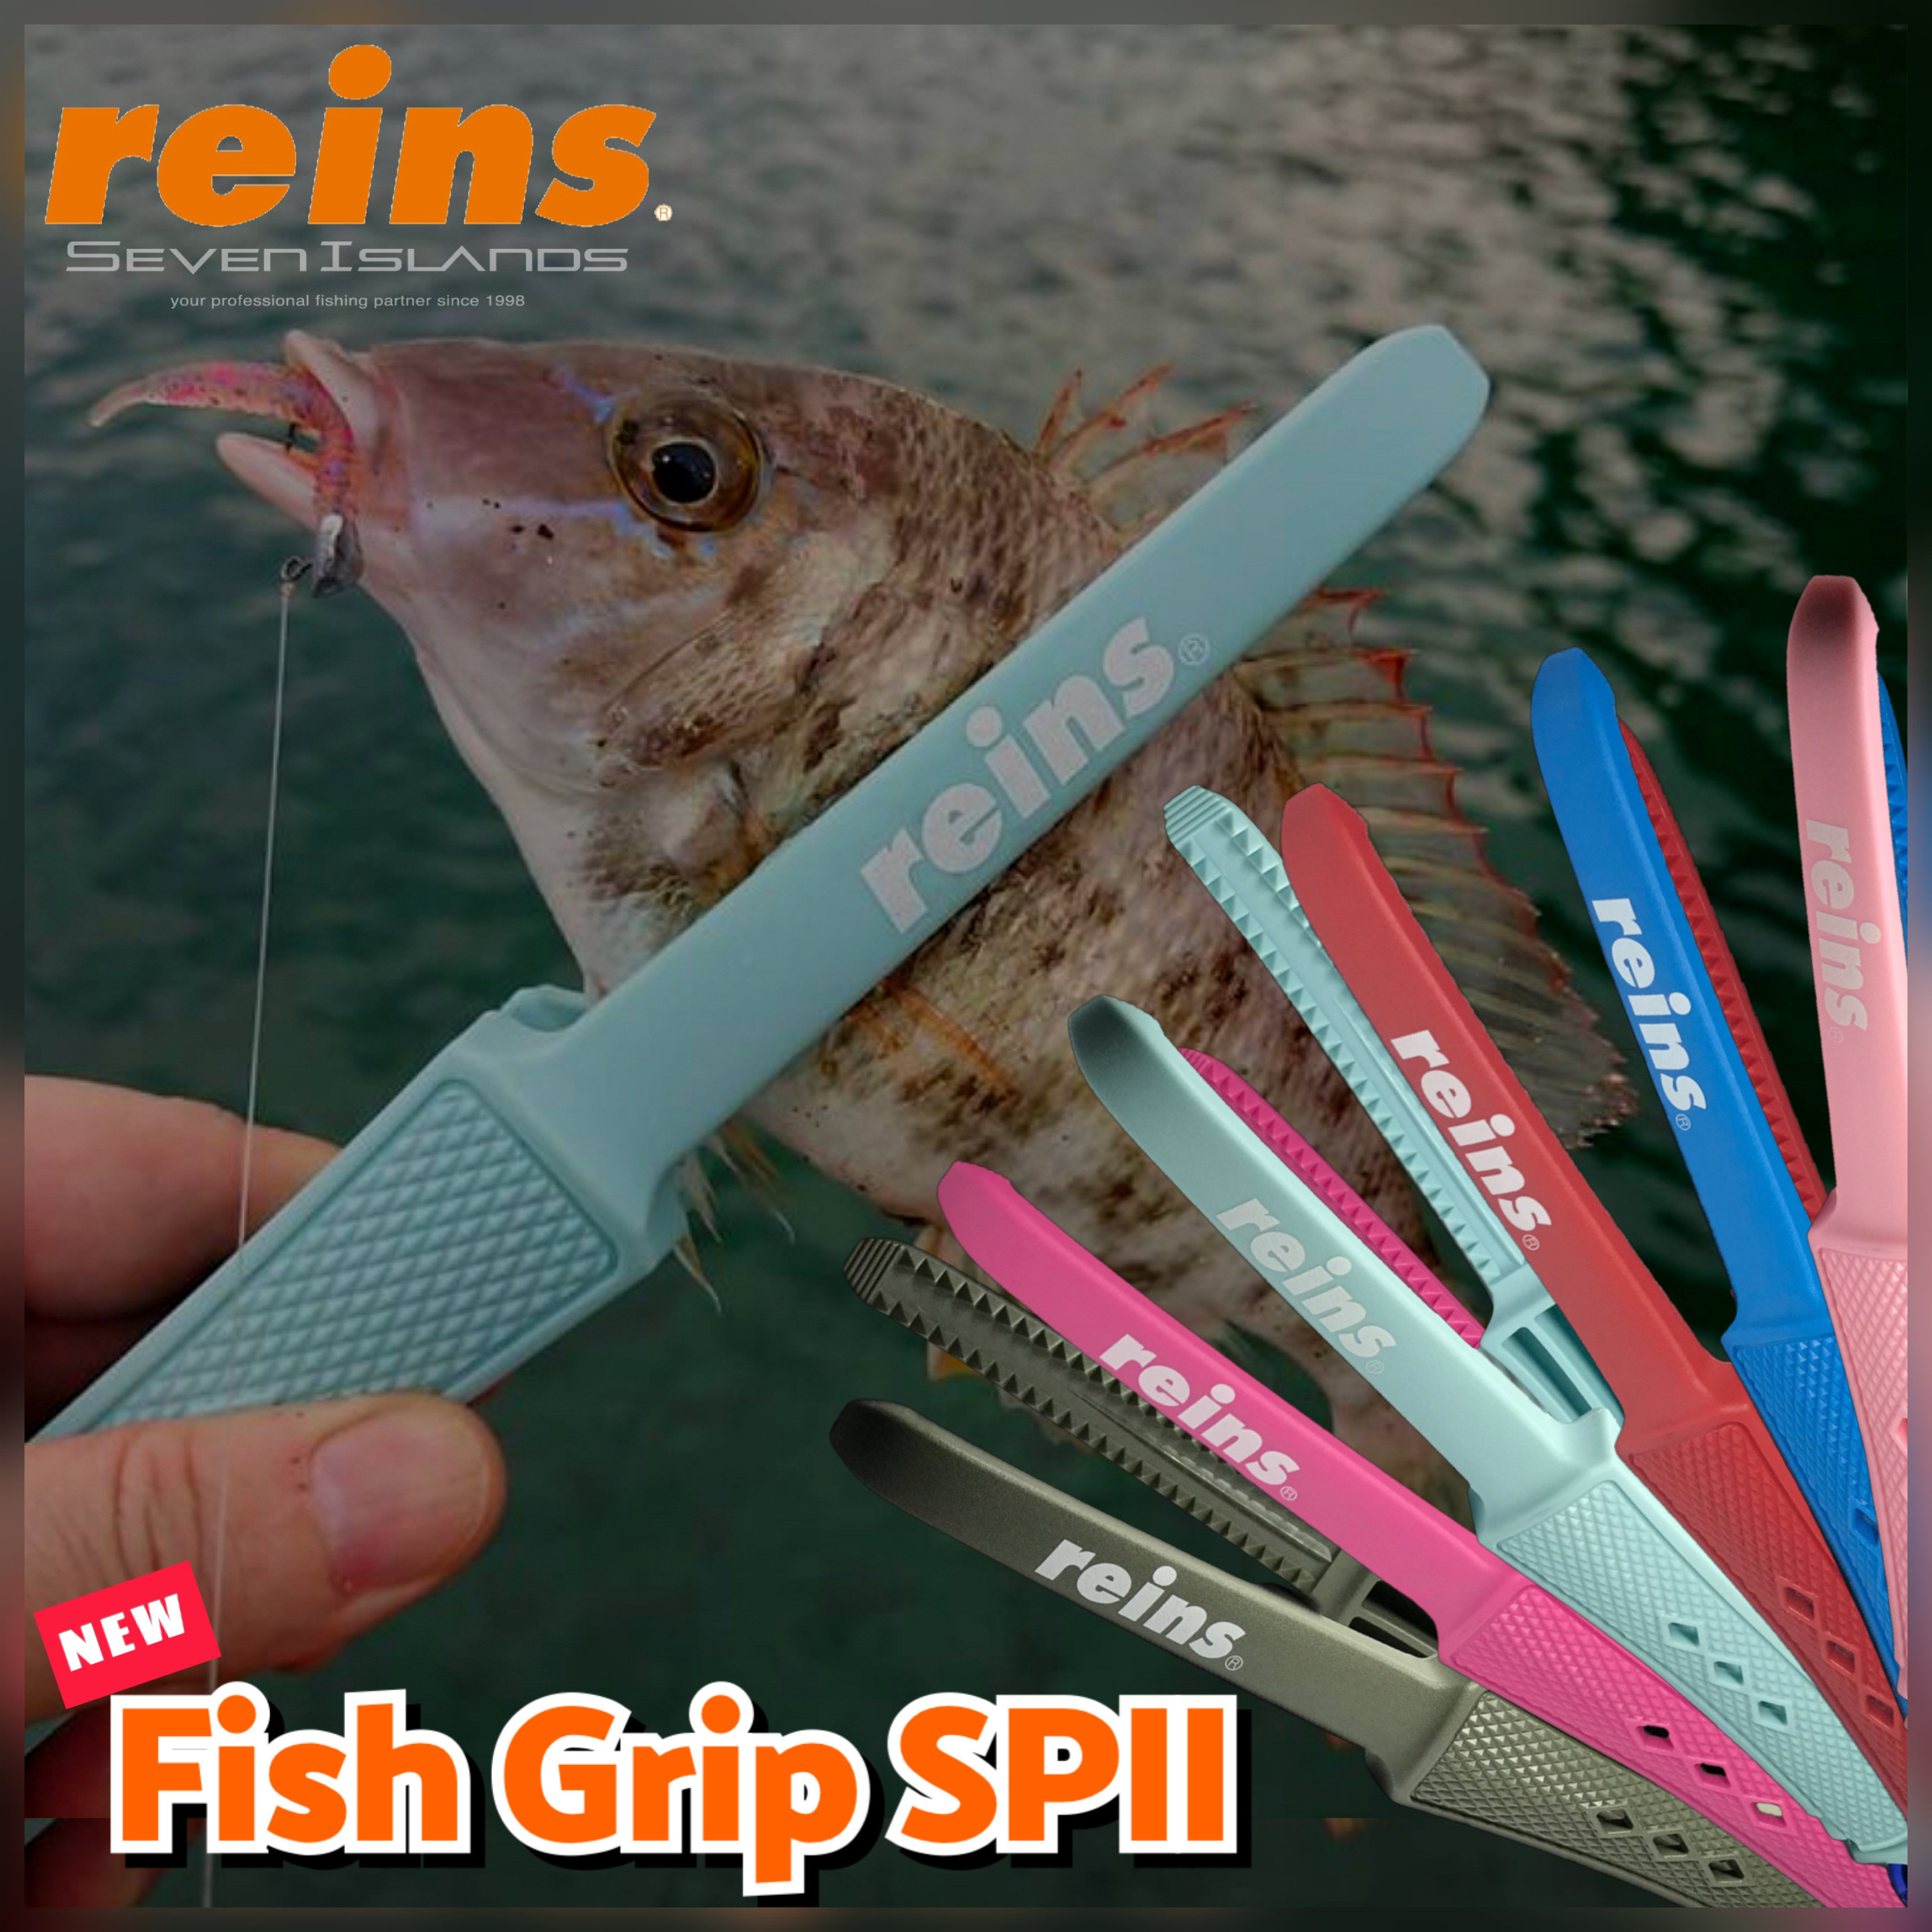 REINS FISH GRIP SPII